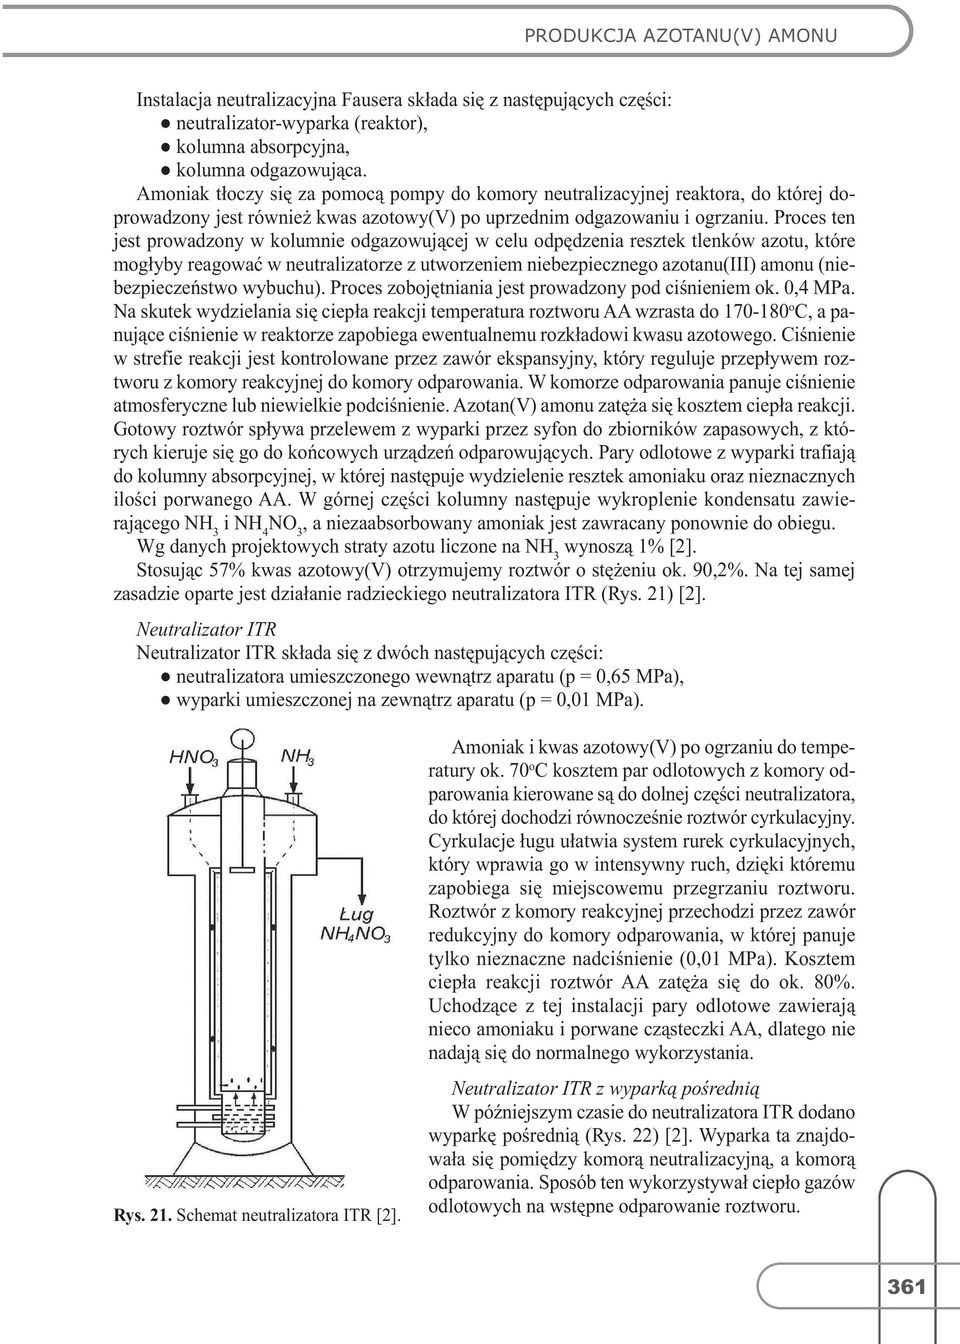 Proces ten jest prowadzony w kolumnie odgazowującej w celu odpędzenia resztek tlenków azotu, które mogłyby reagować w neutralizatorze z utworzeniem niebezpiecznego azotanu(iii)